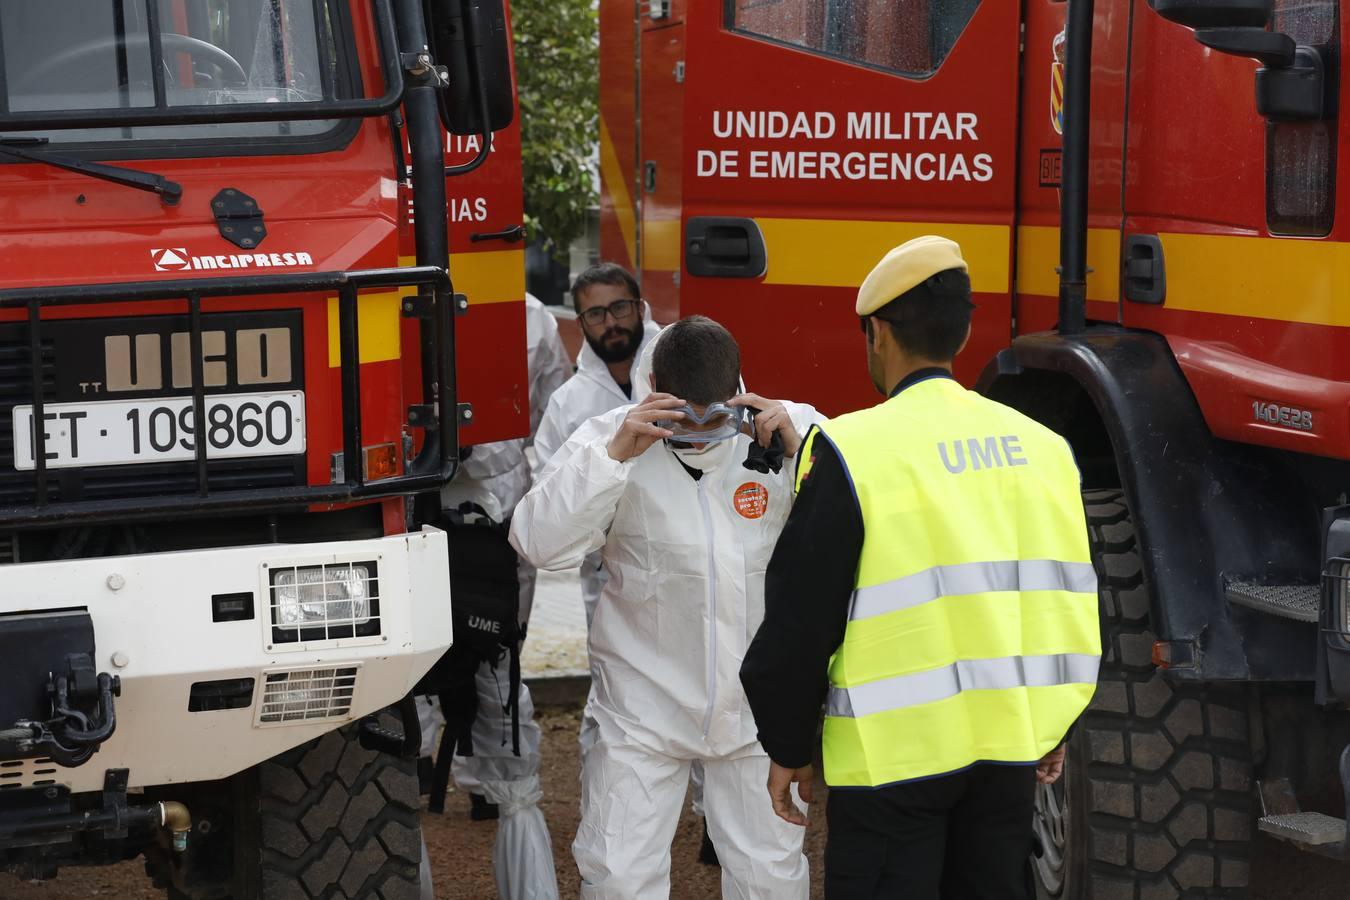 En imágenes, la UME inicia en Córdoba la desinfección contra el coronavirus